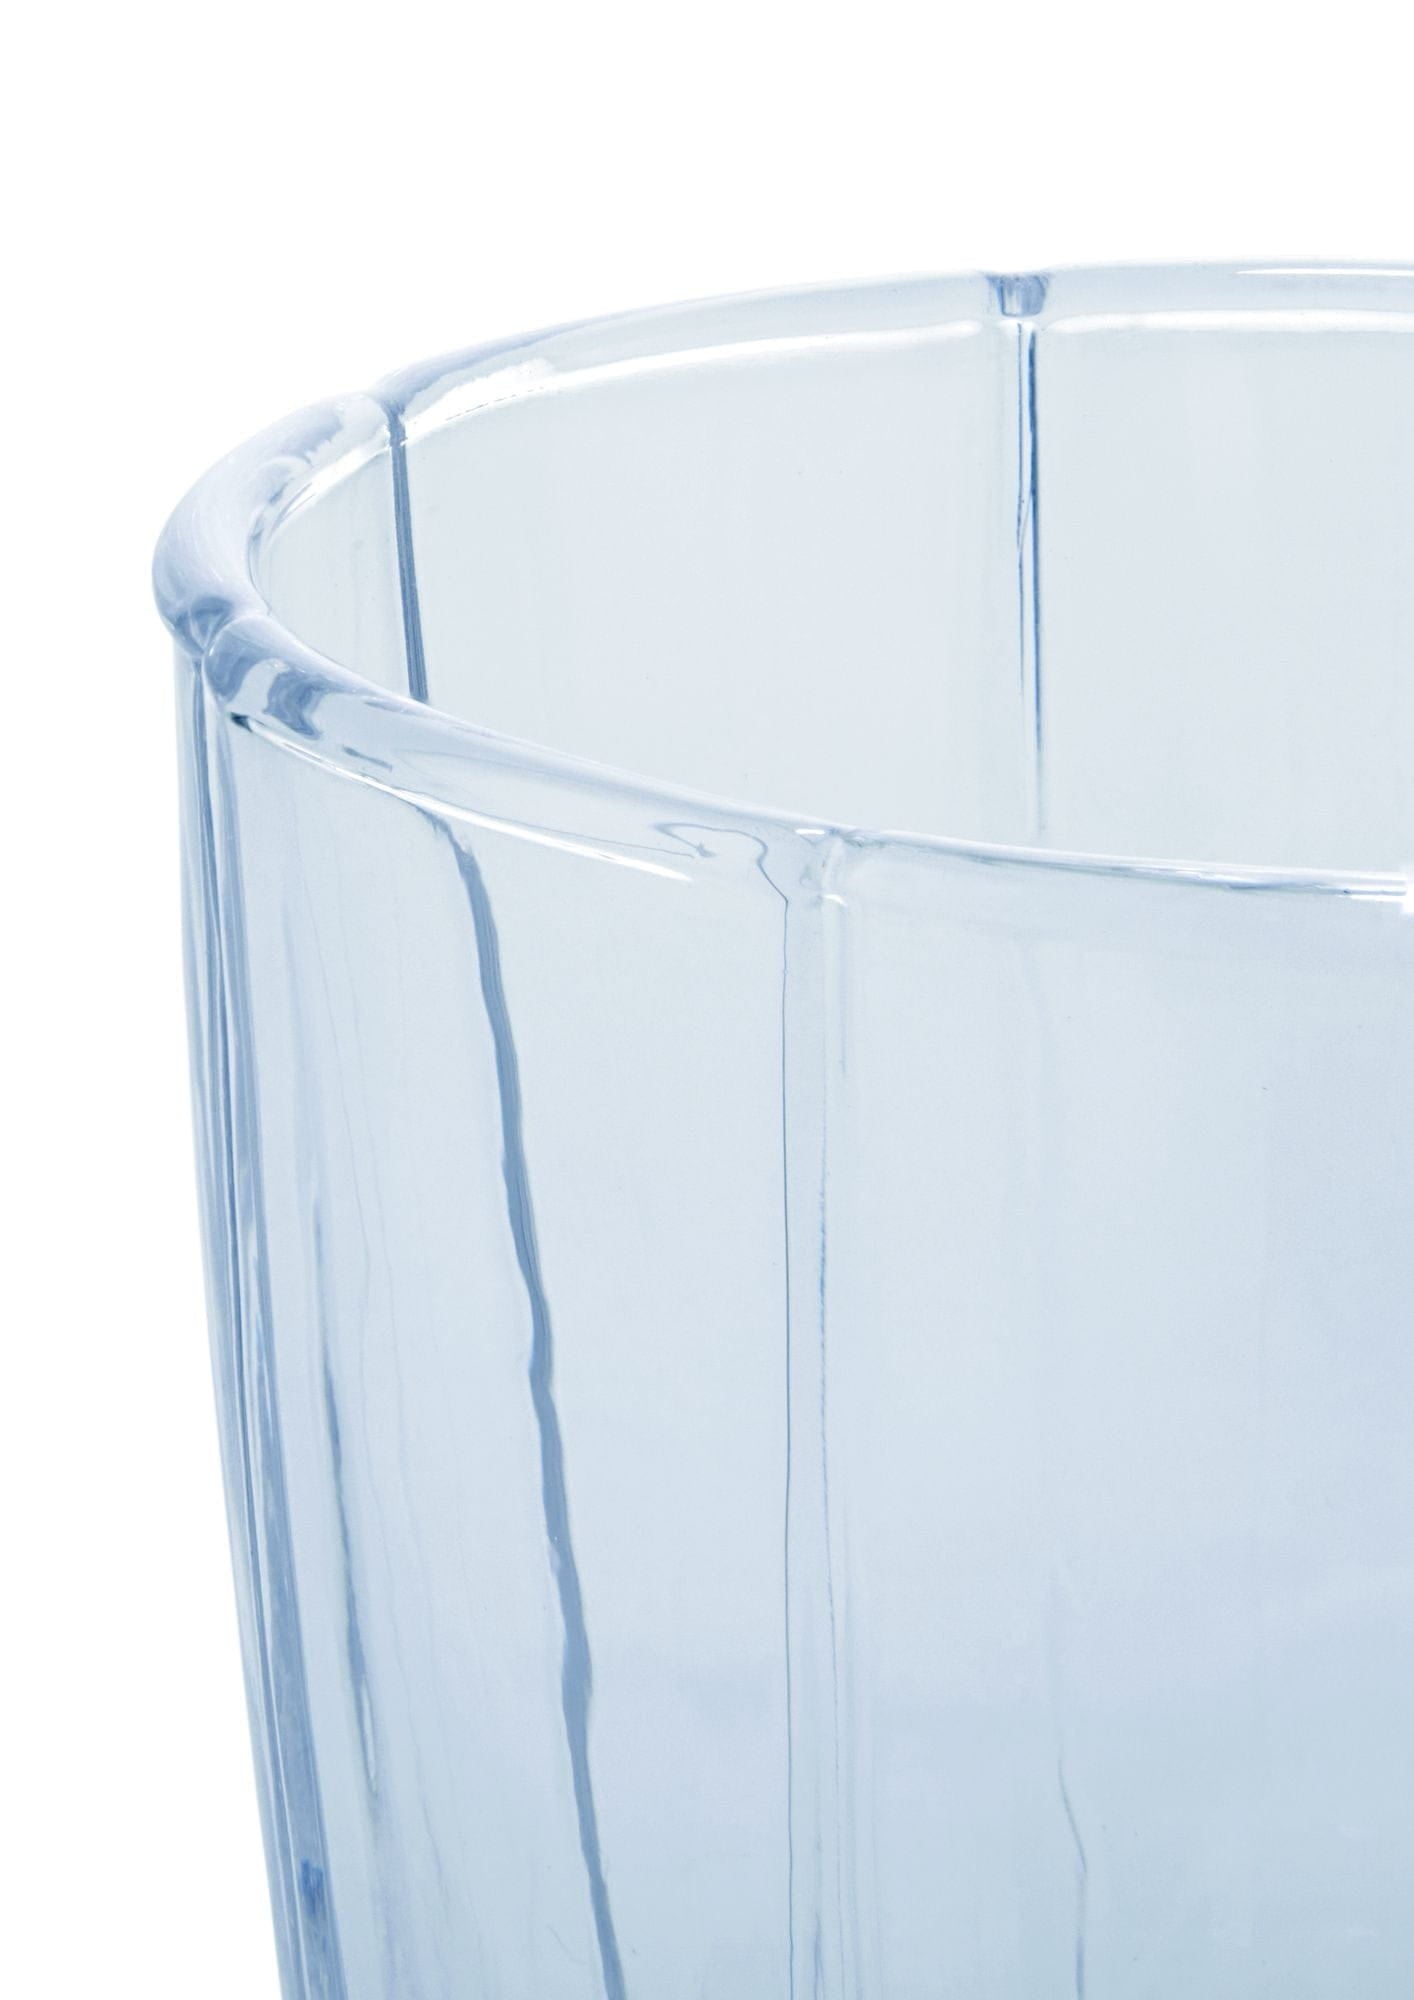 Holmegaard Lily Wasserglas Set von 2 320 ml, blau